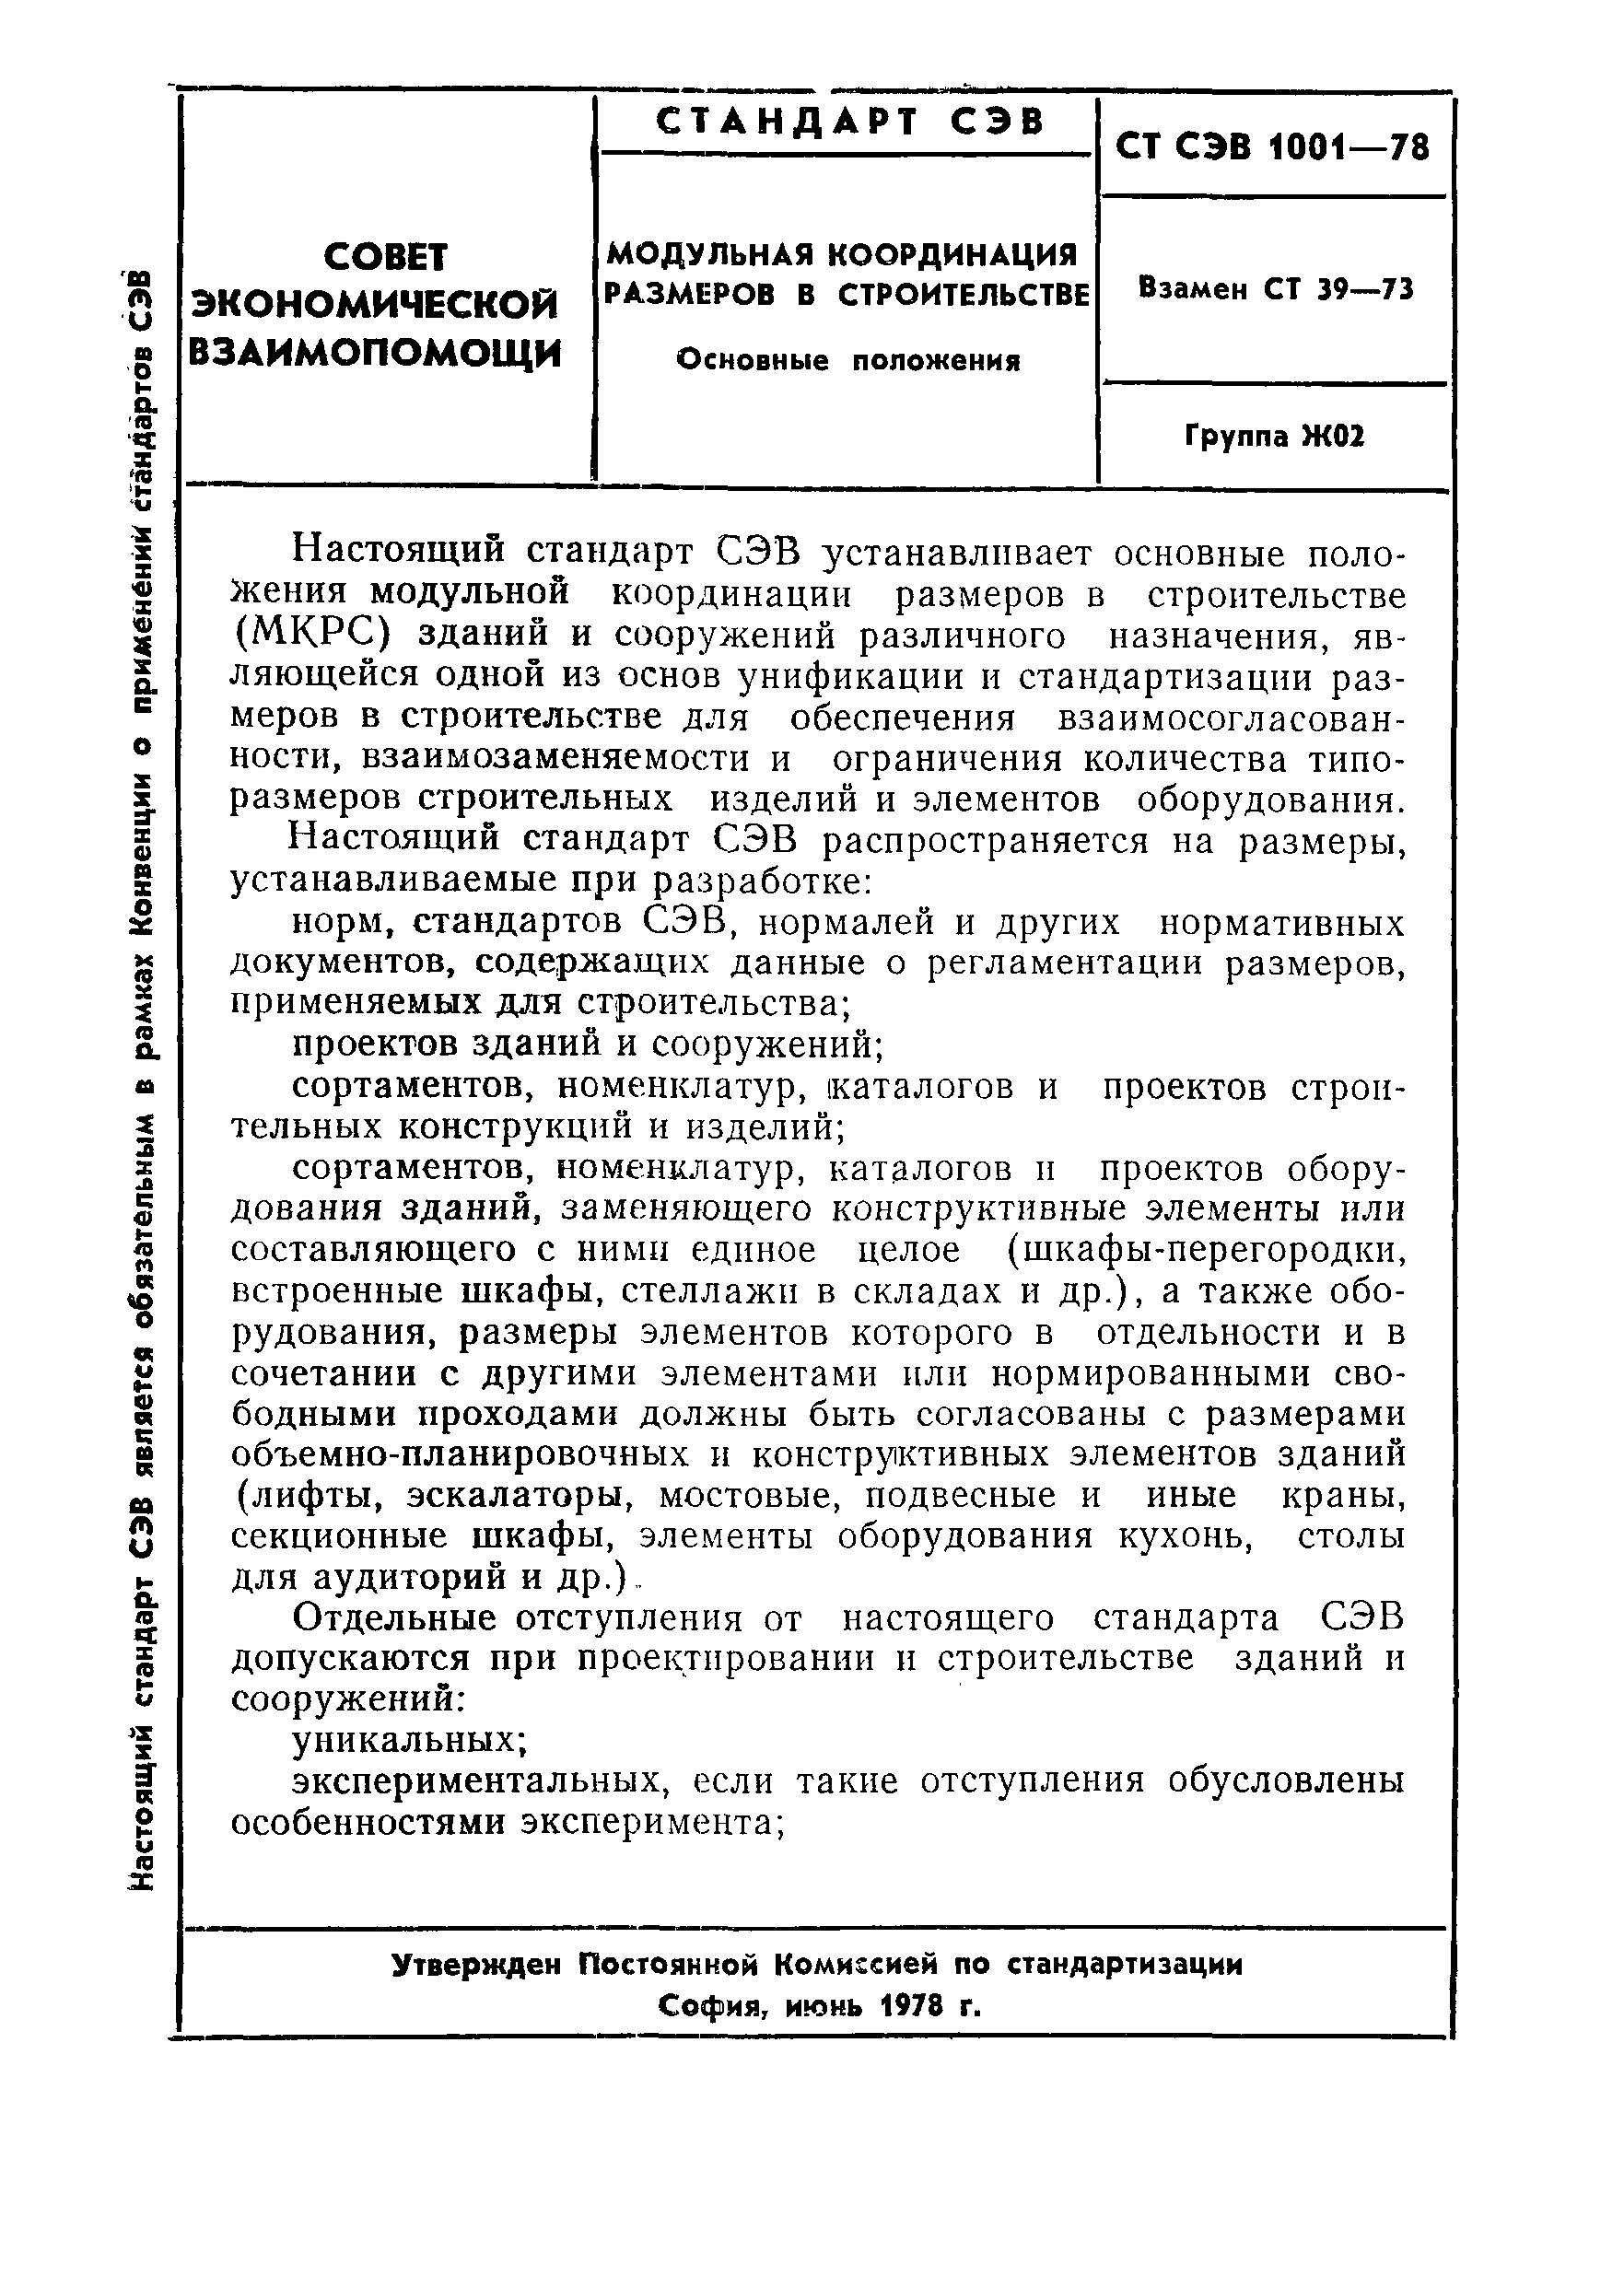 СТ СЭВ 1001-78